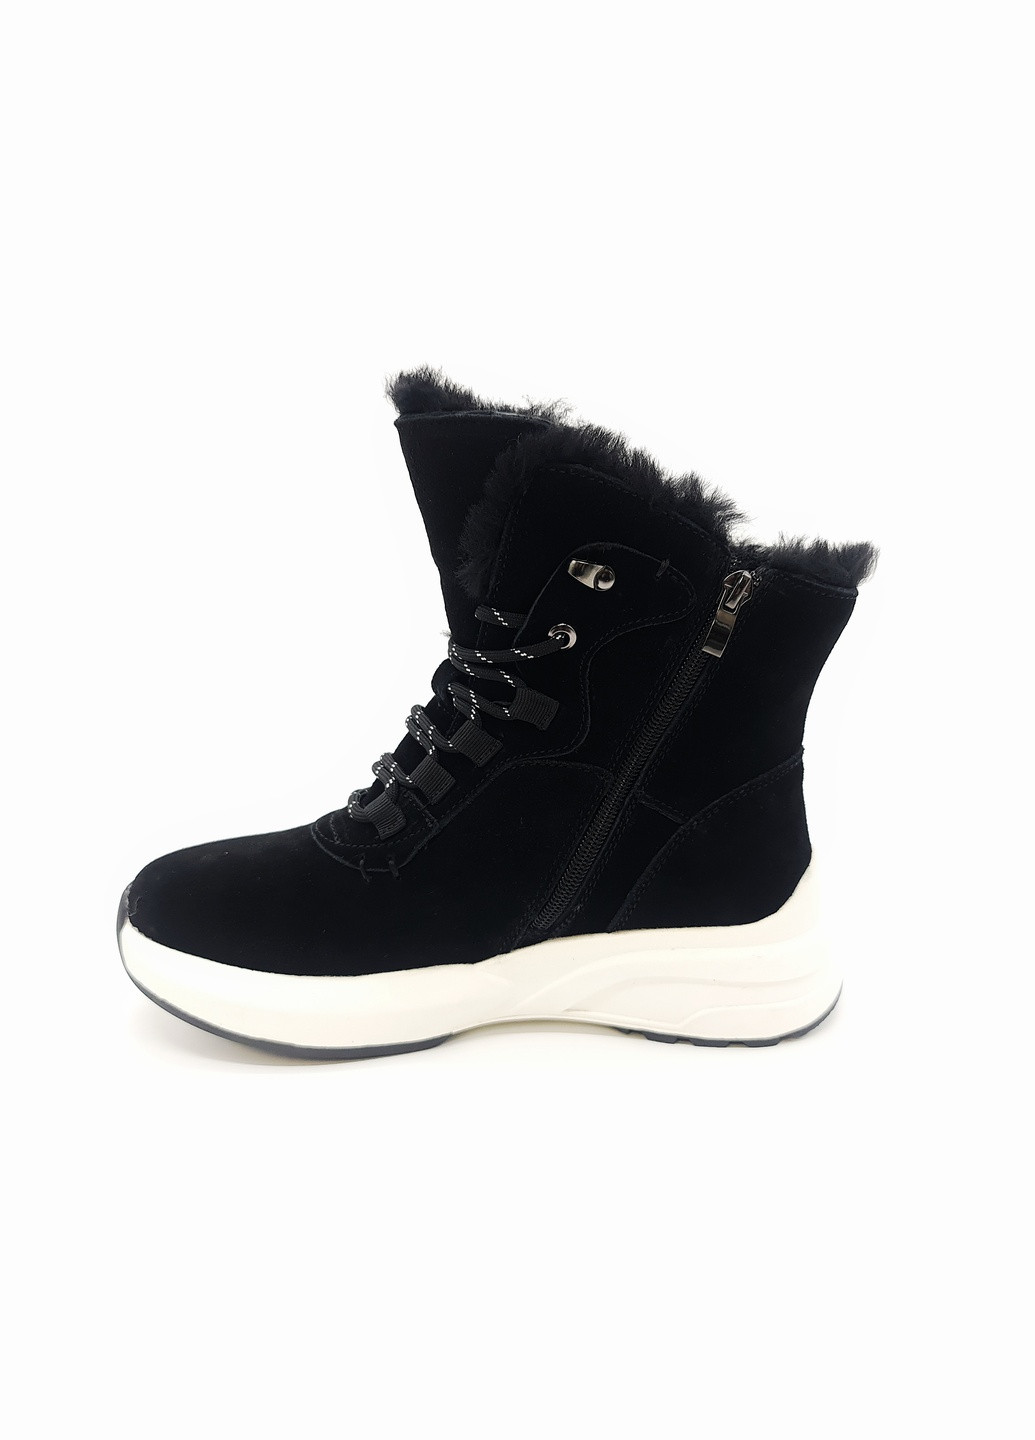 Осенние женские ботинки зимние черные замшевые l-16-2 23,5 см (р) Lonza